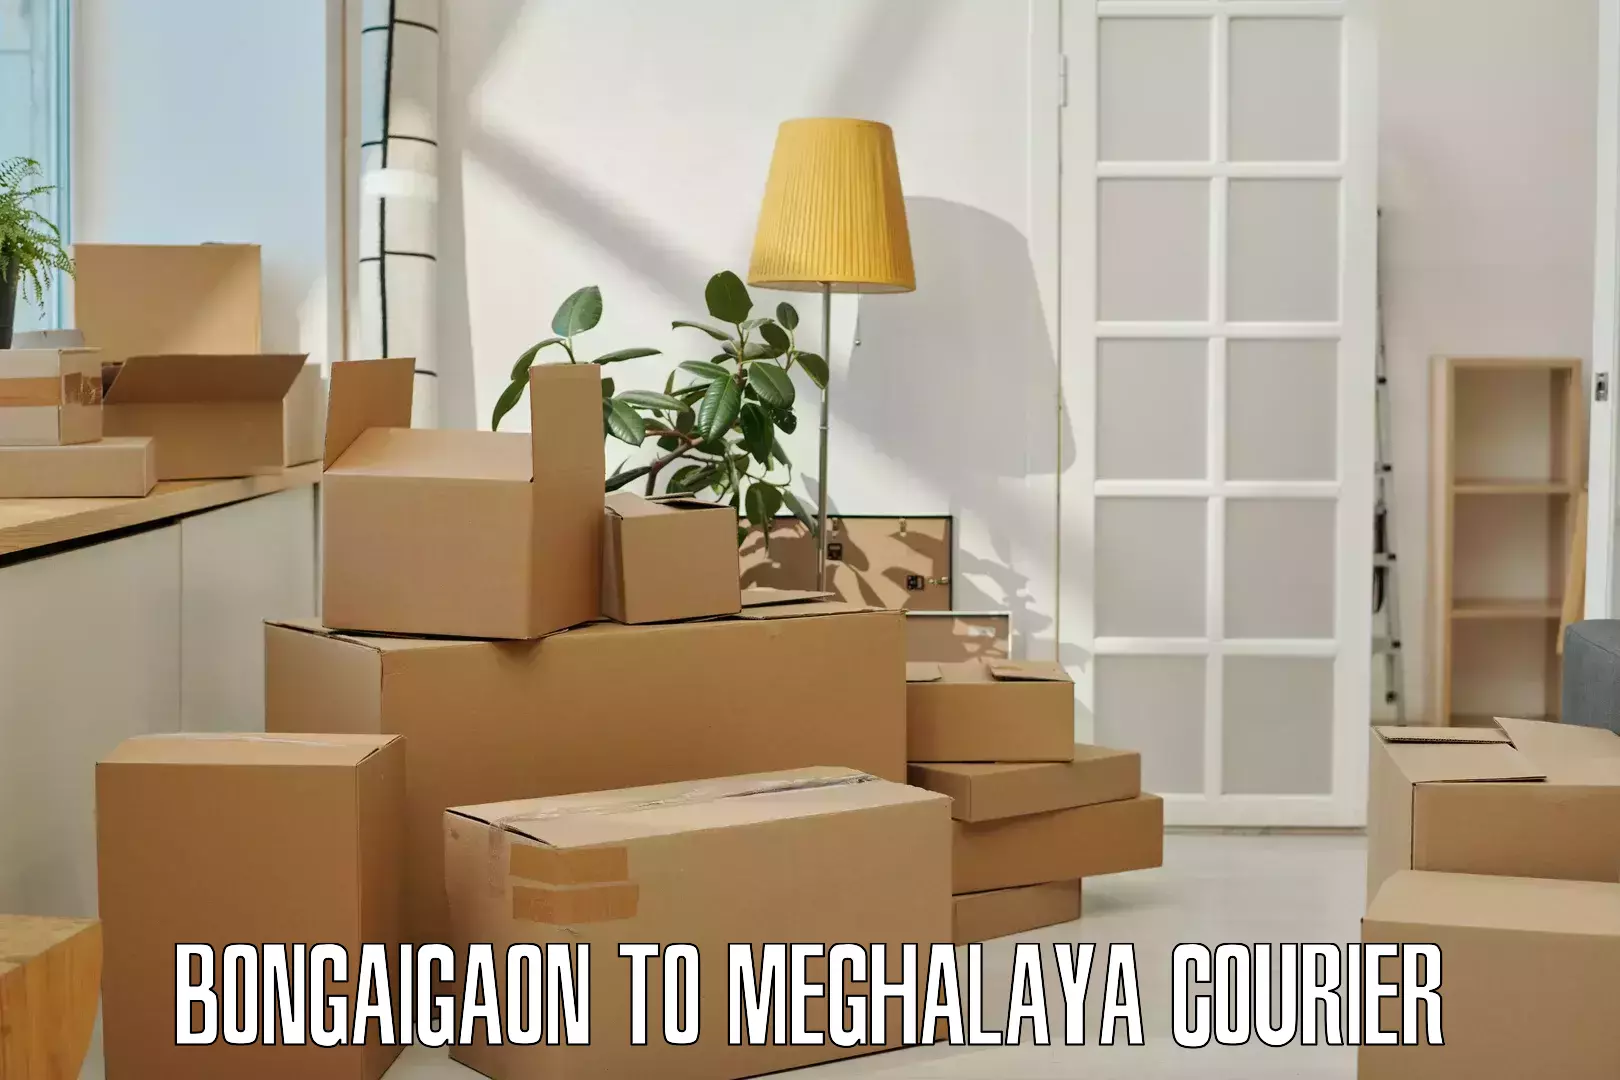 Efficient parcel tracking Bongaigaon to Meghalaya